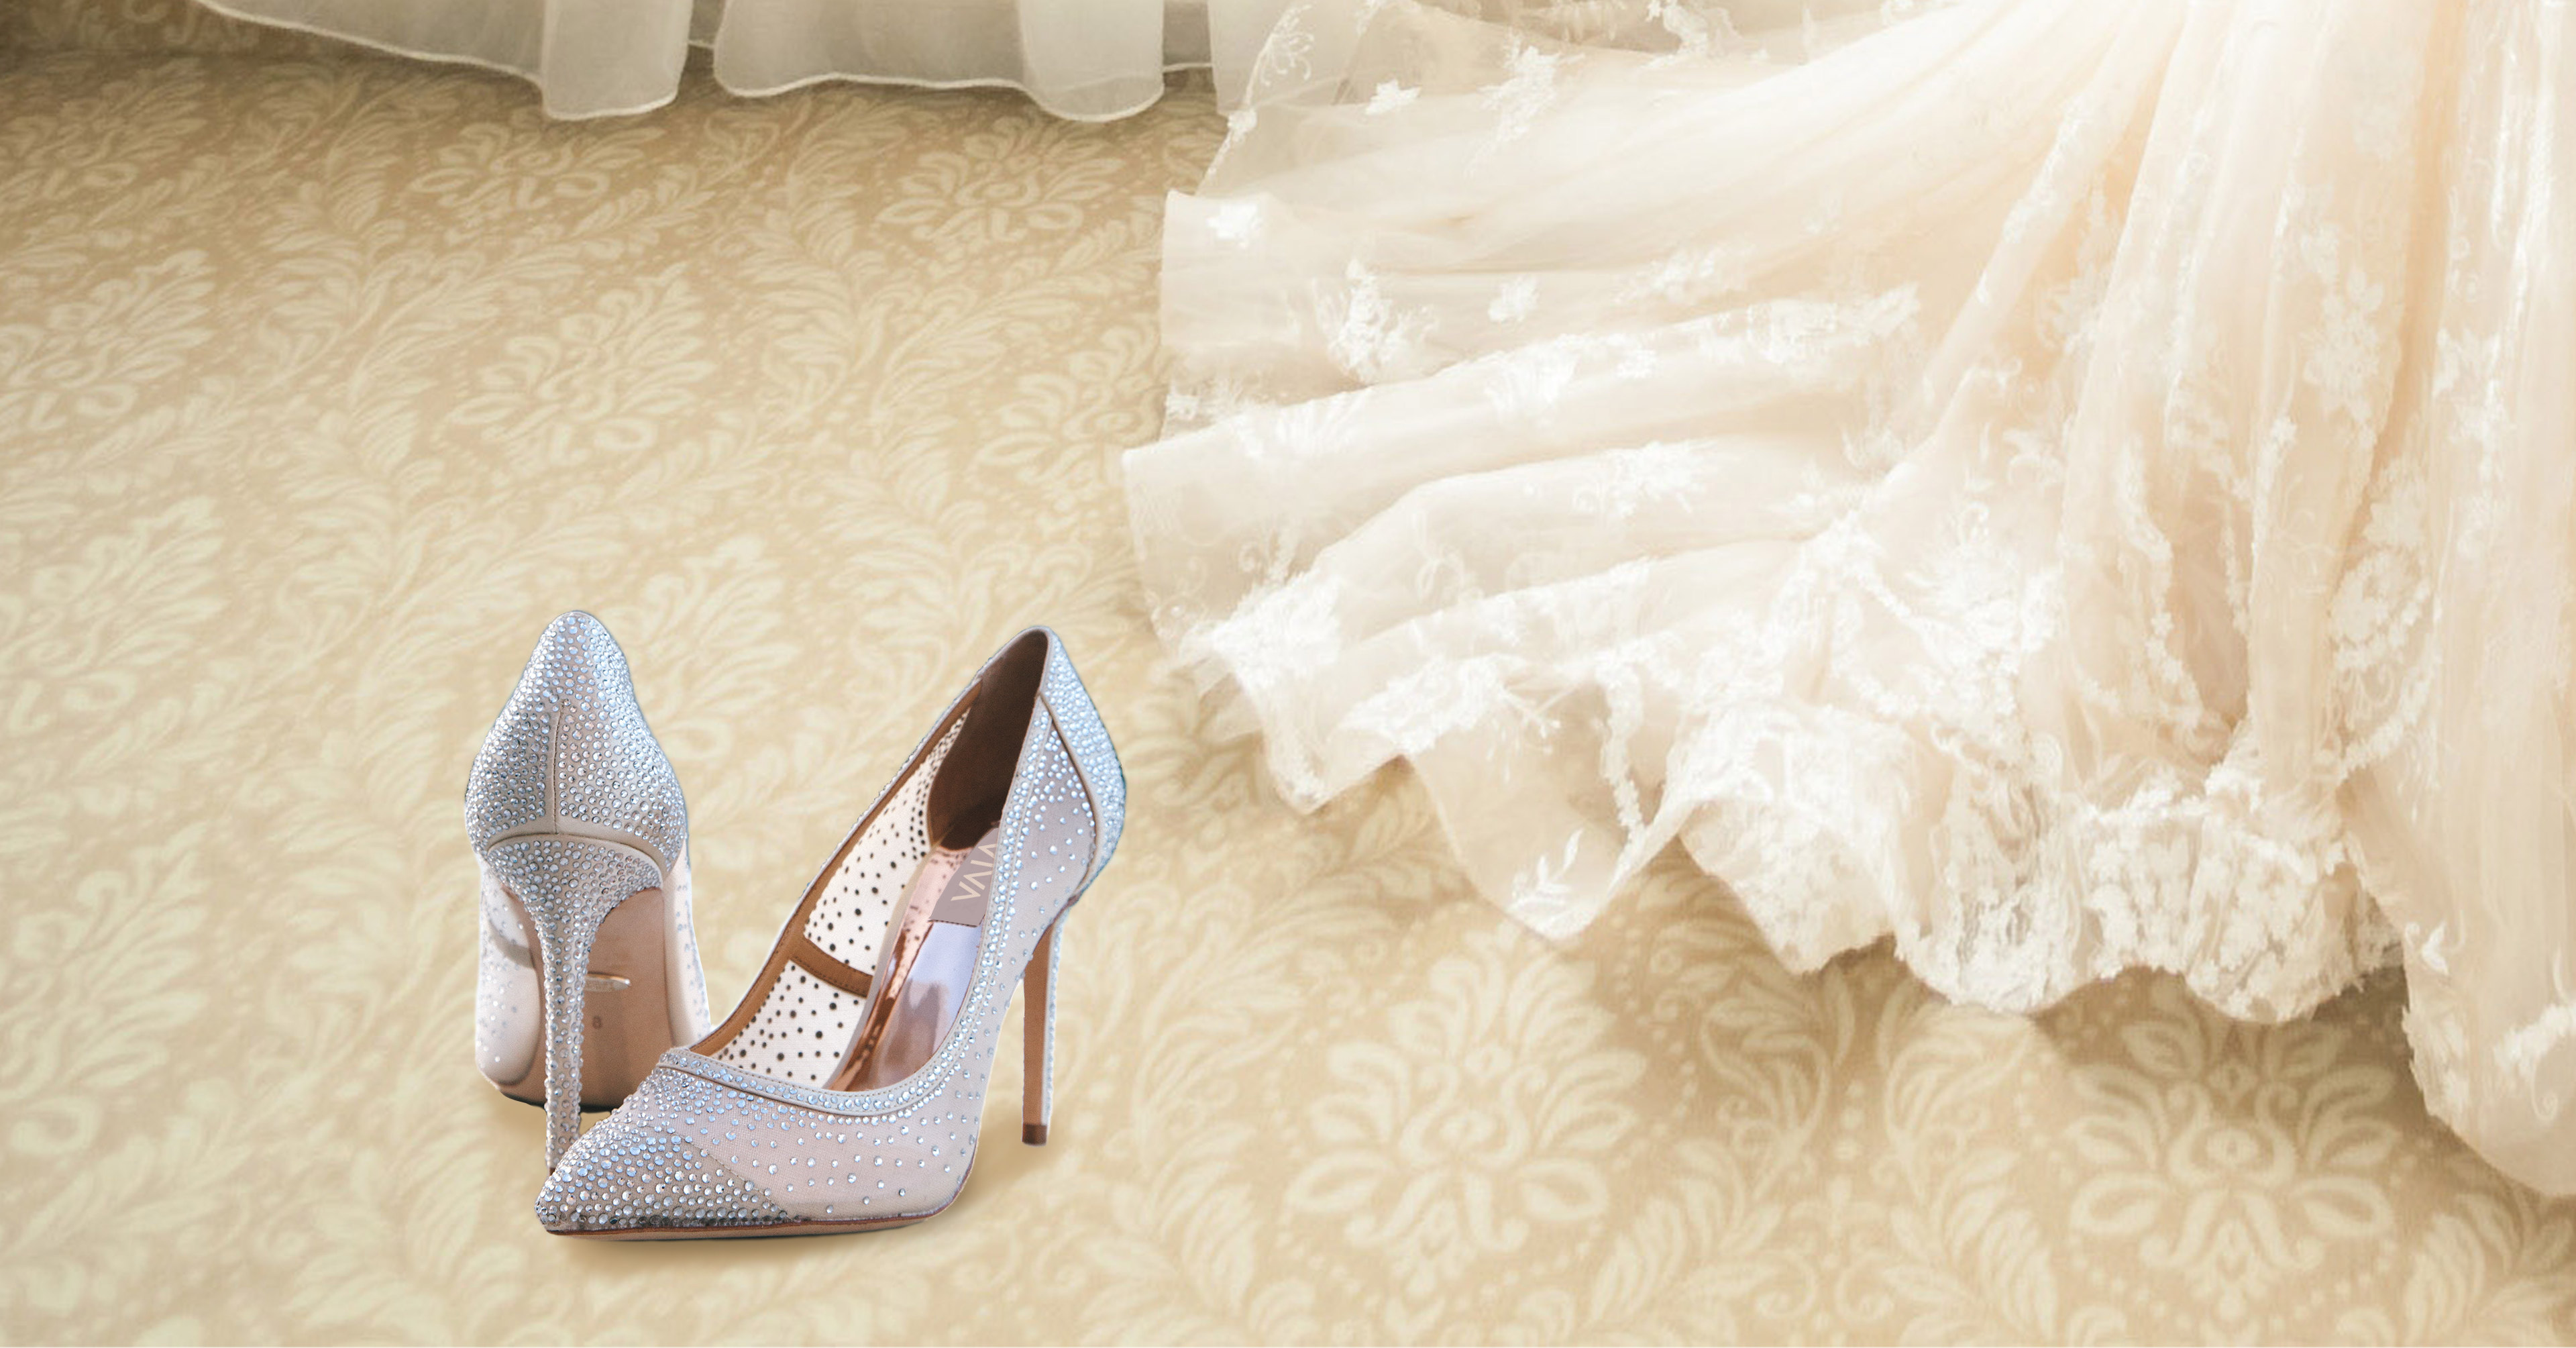 VIVA Wedding Shoes - iDesign Branding